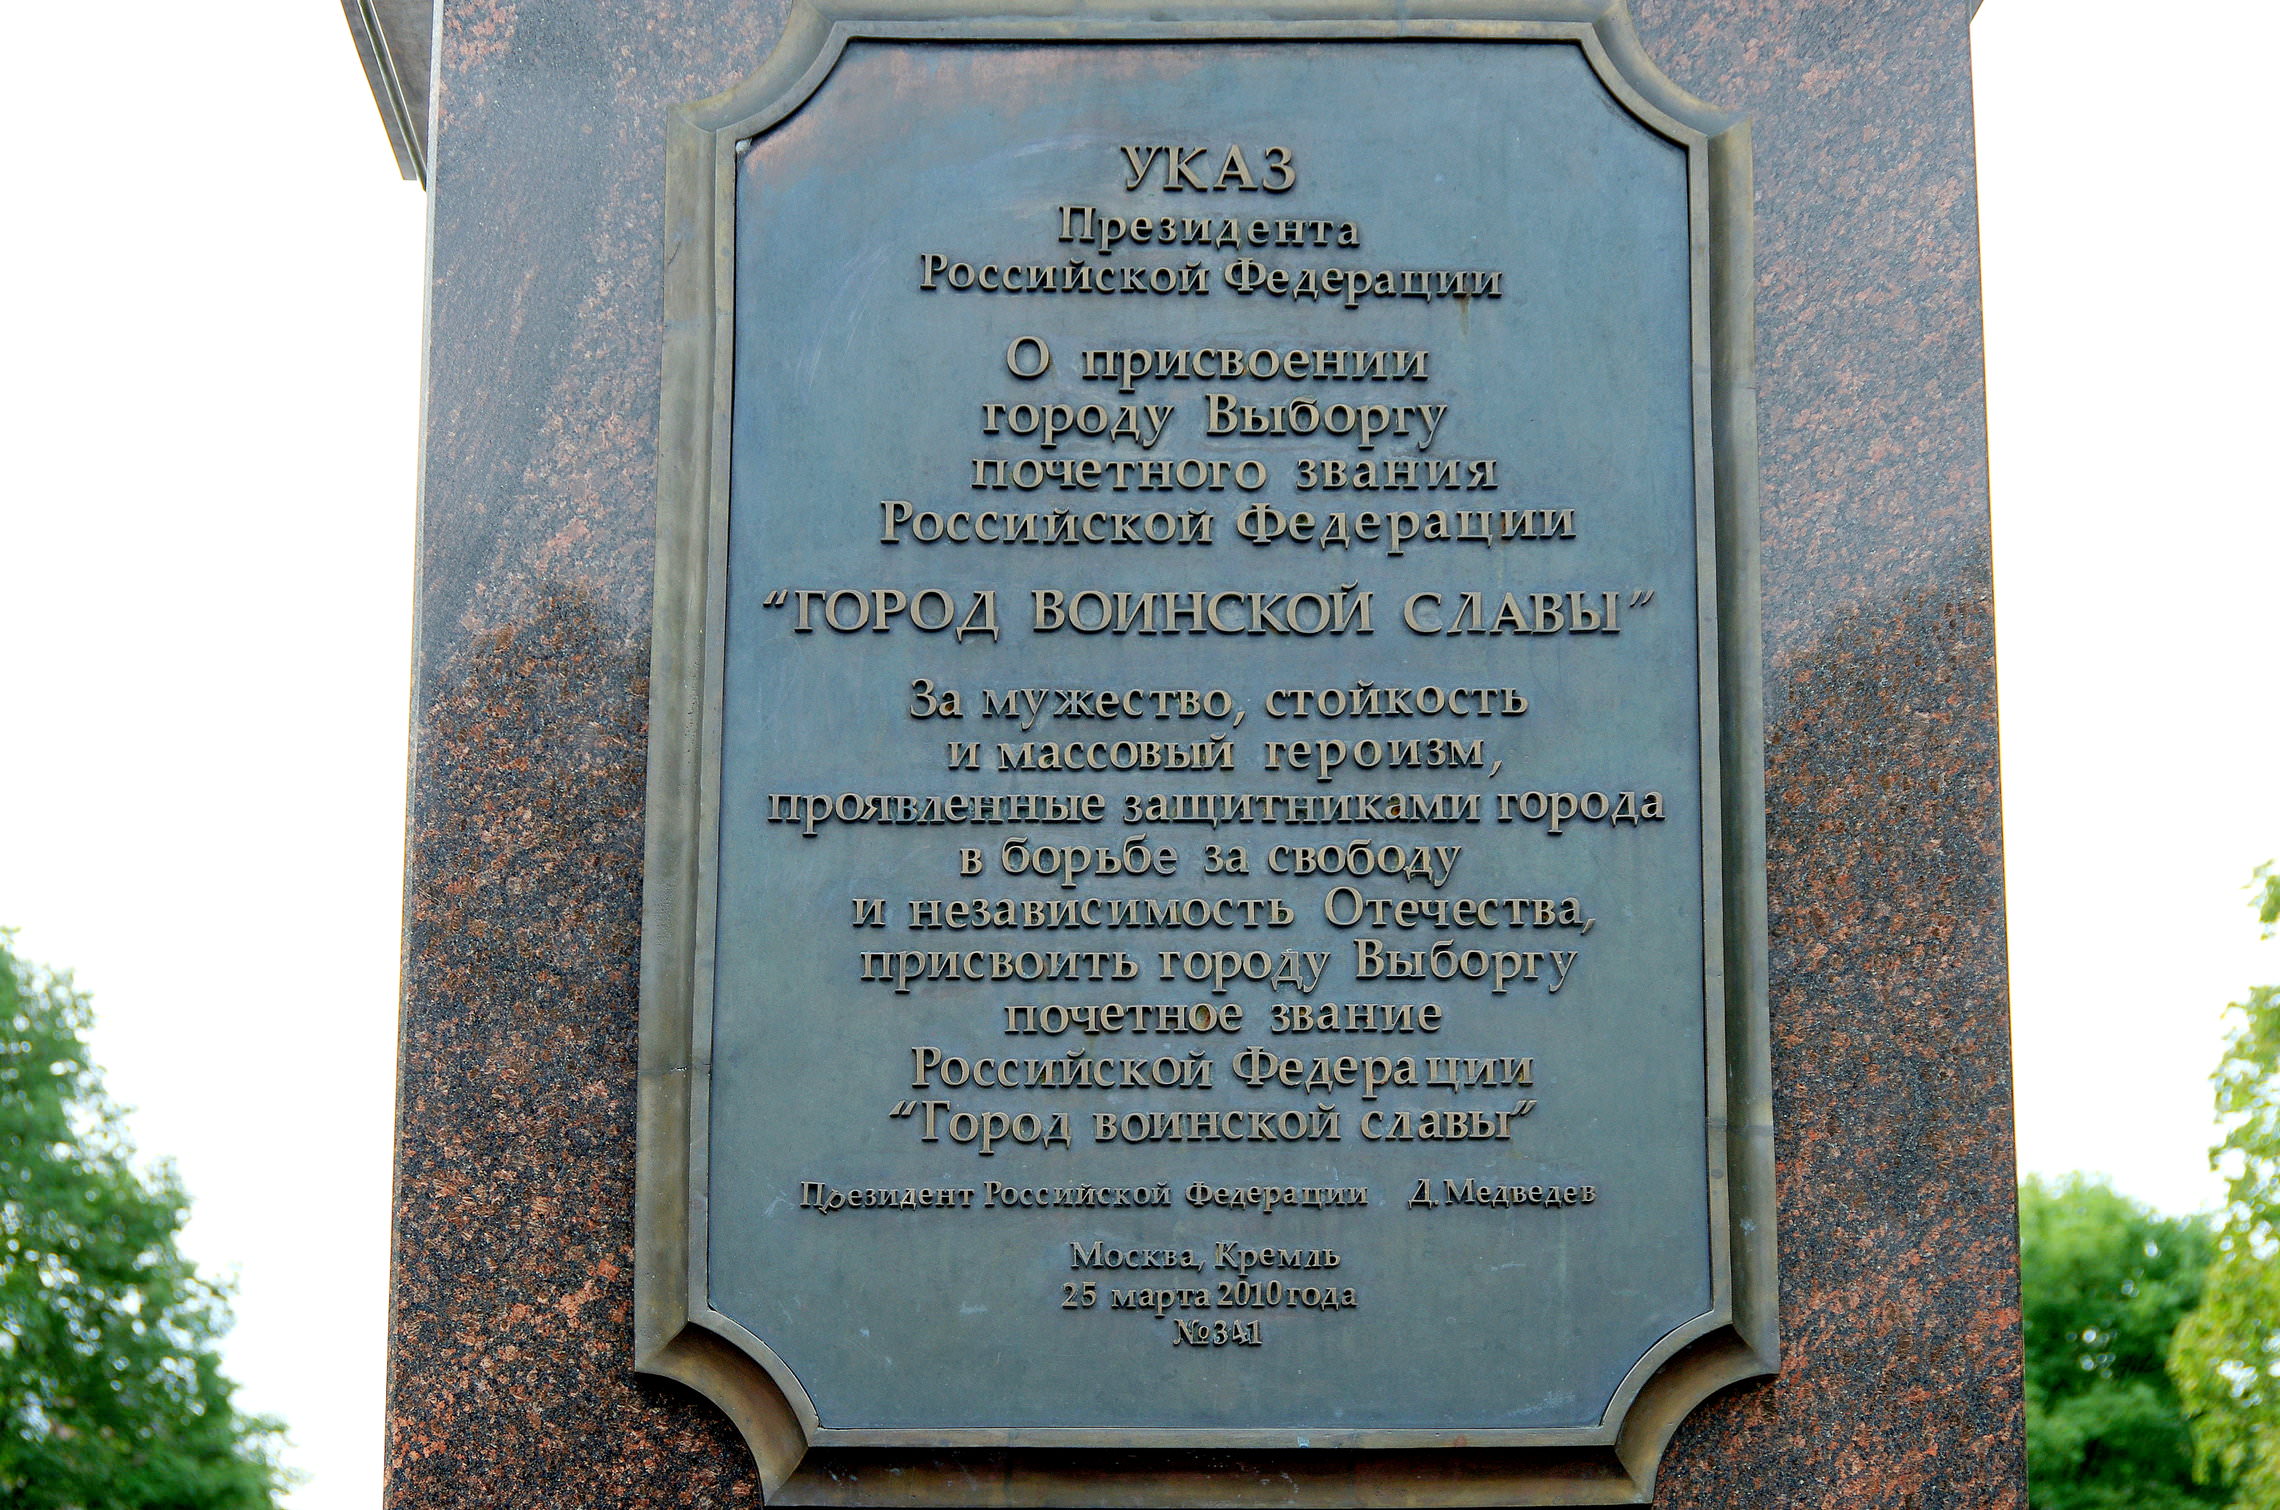 Памятник-стела «Город воинской славы» в Выборге.